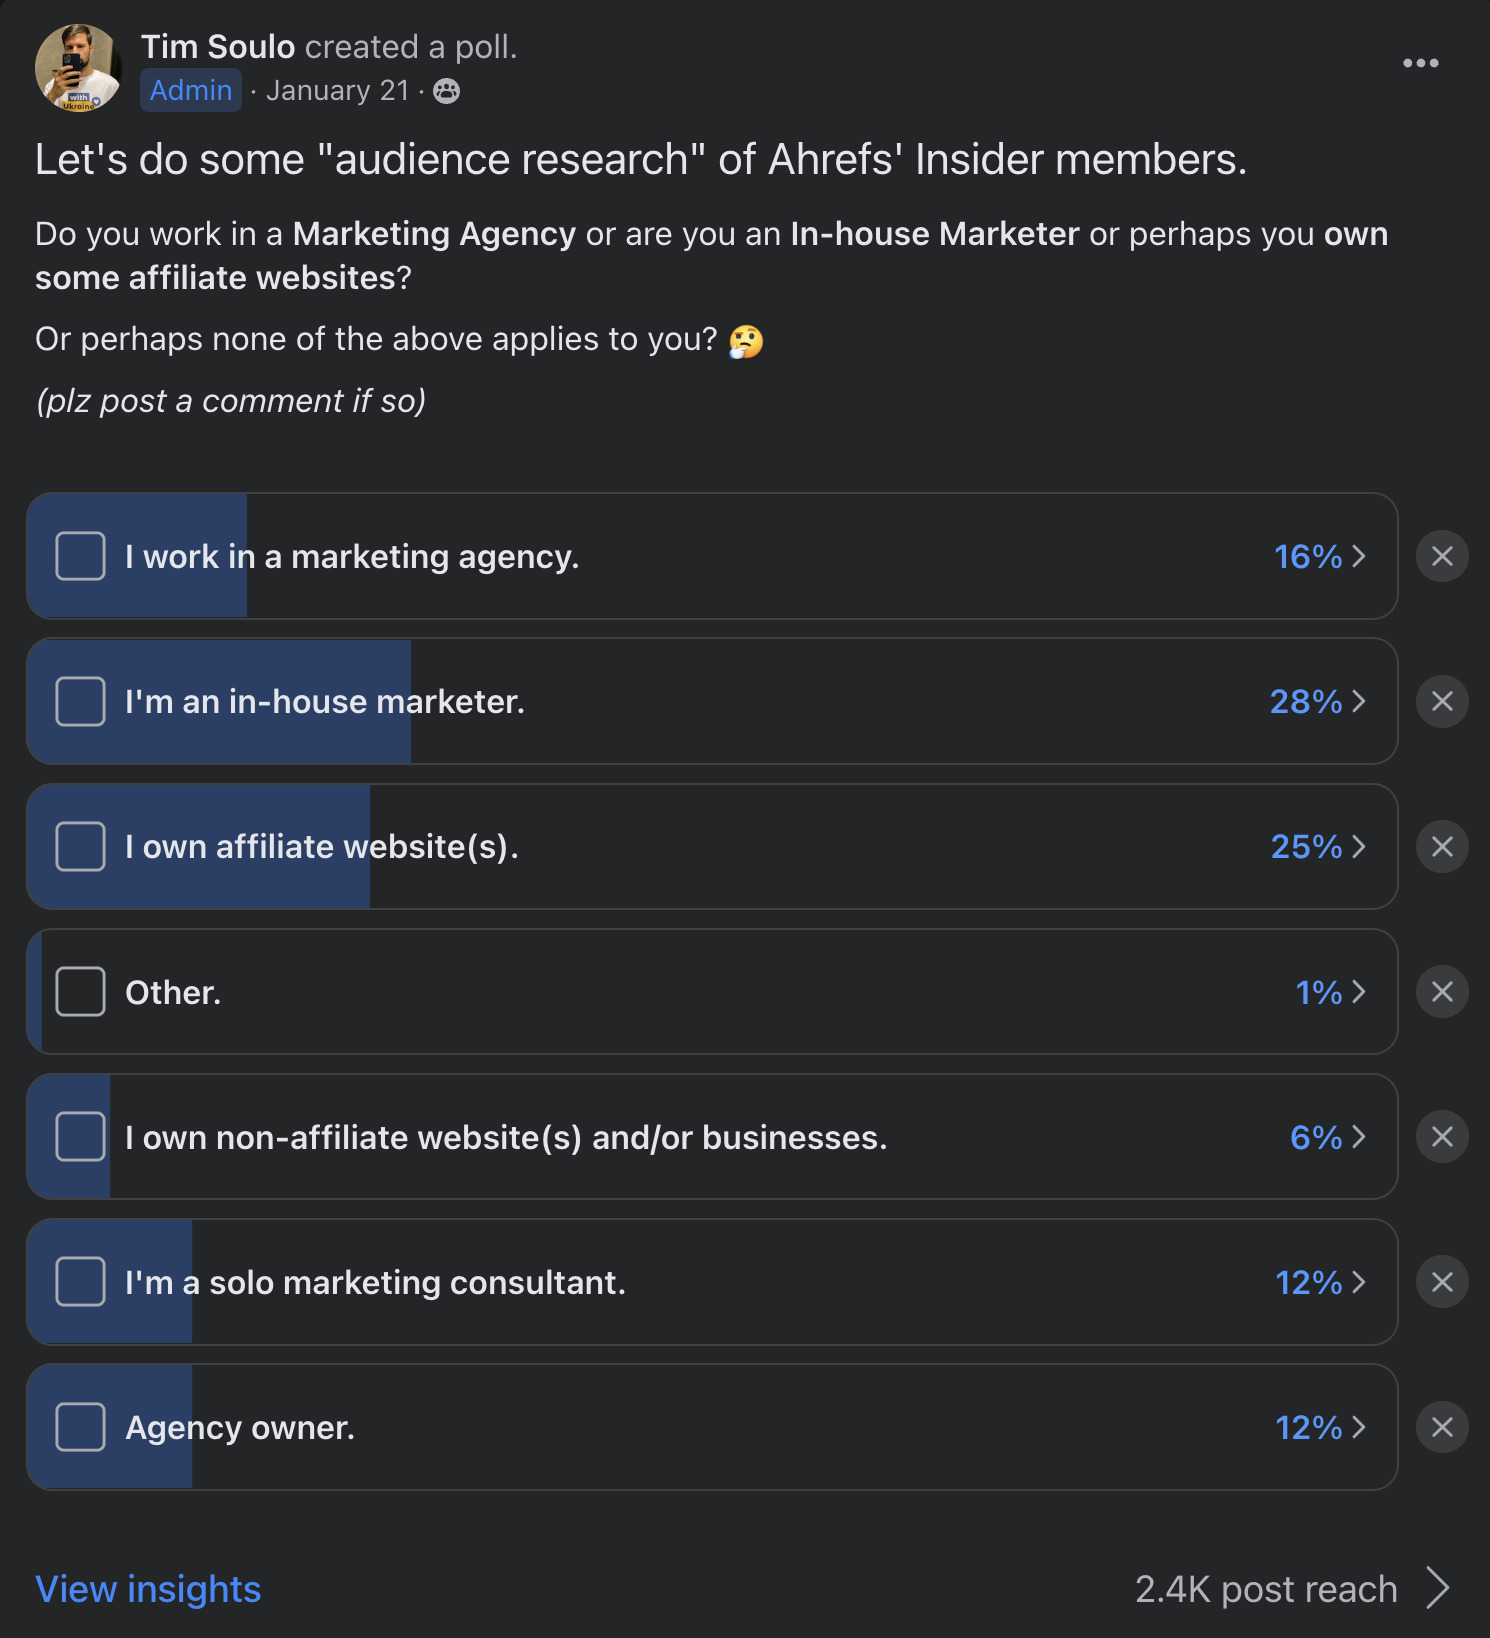 Ahrefs Insider üyeleri için Facebook aracılığıyla hedef kitle araştırması